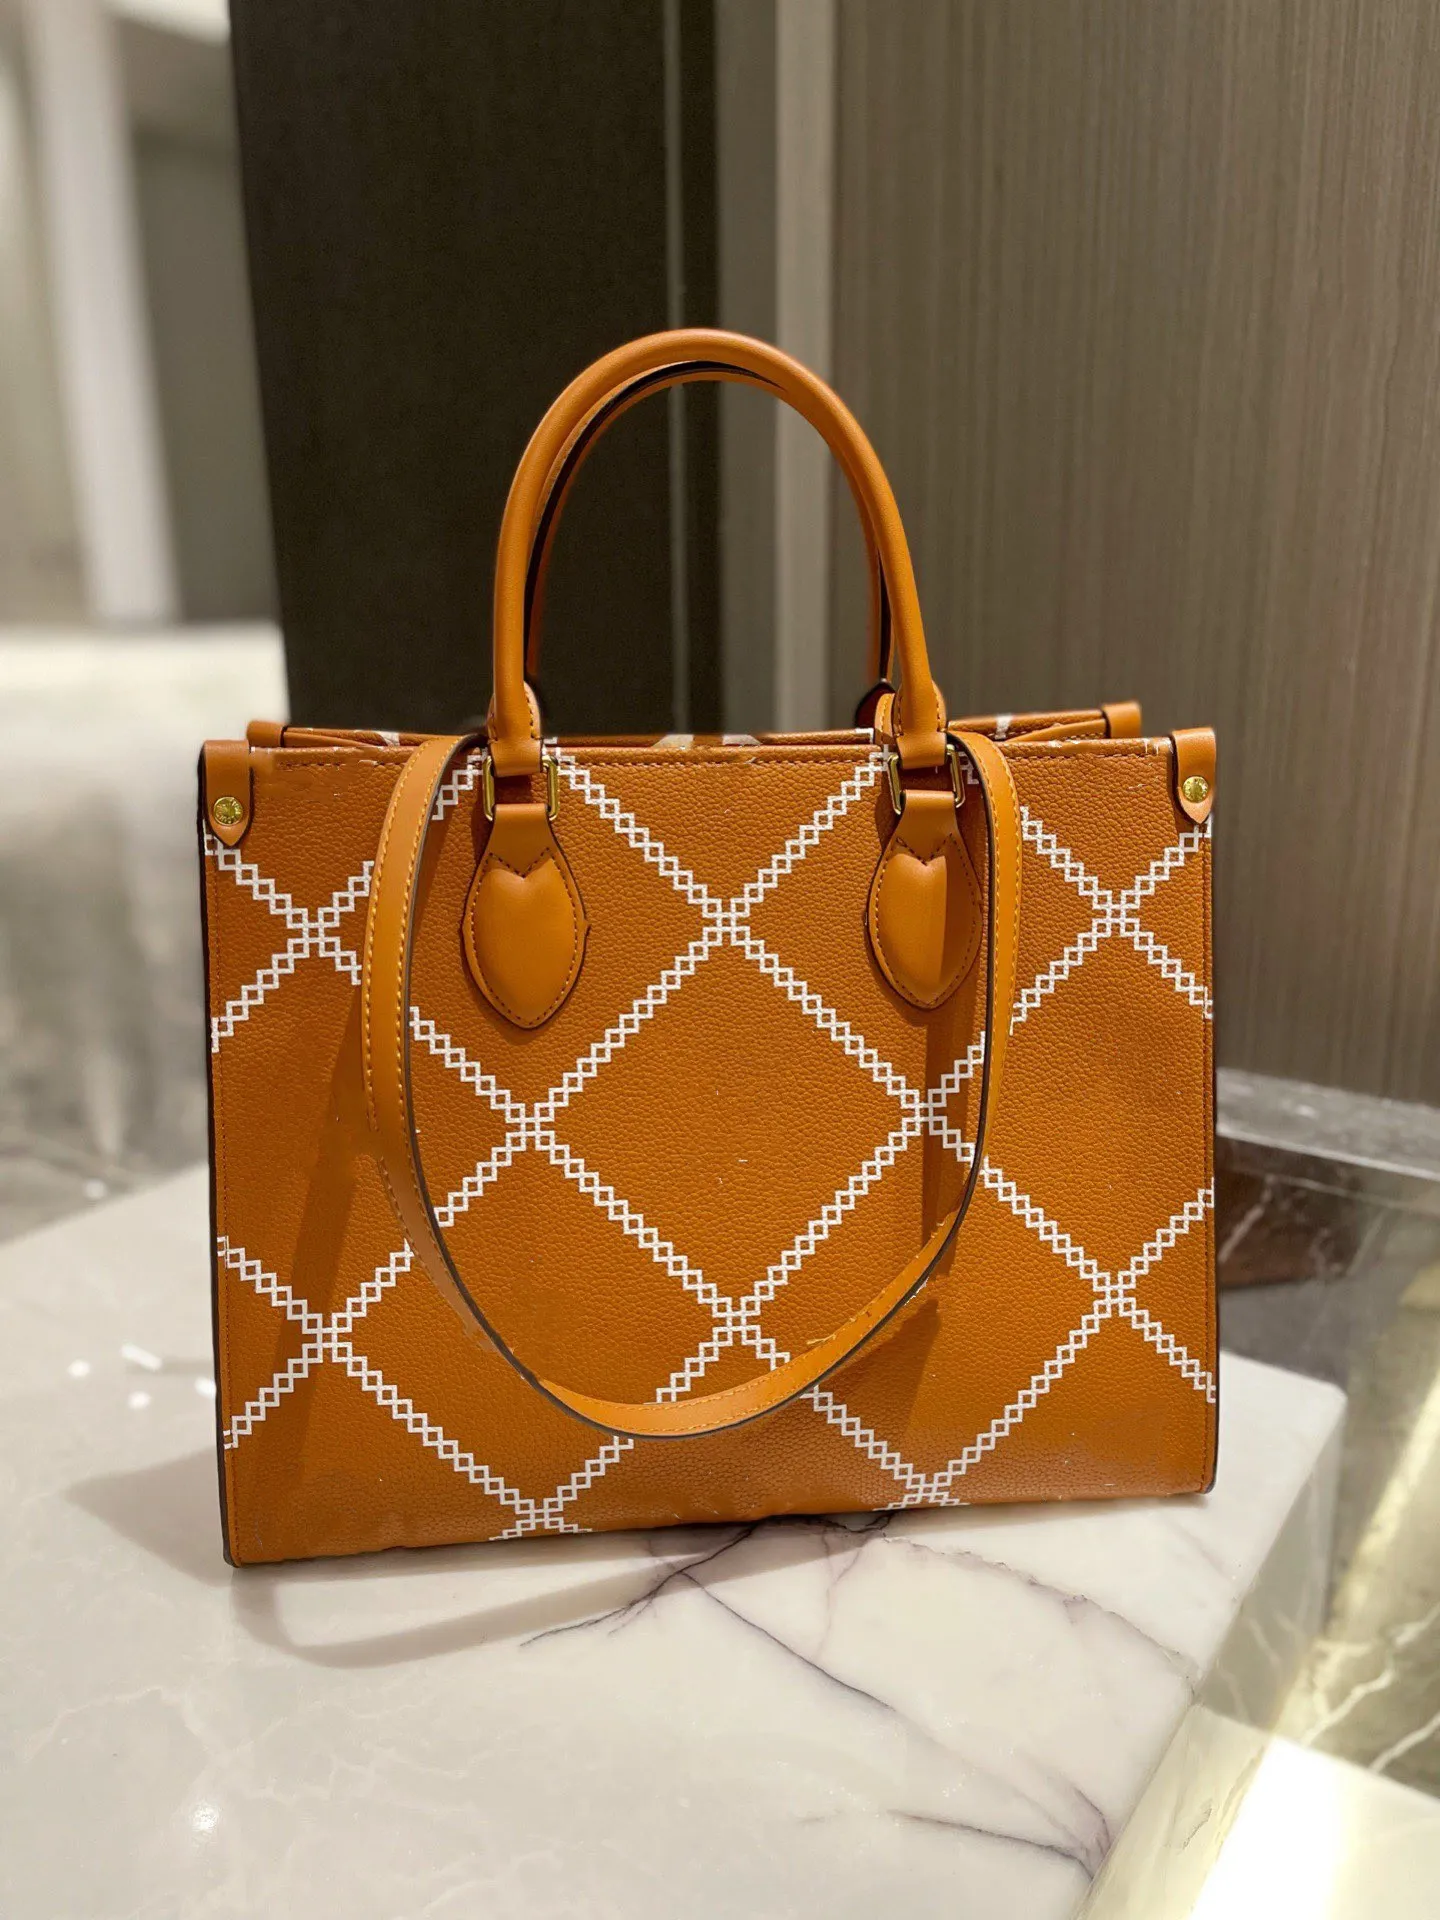 2021 가죽 편지 핸드백, 오래 된 메신저 여자의 핸드백 및 양각 된 어깨 가방을 가진 최신 고품질 패션 클래식 가방.